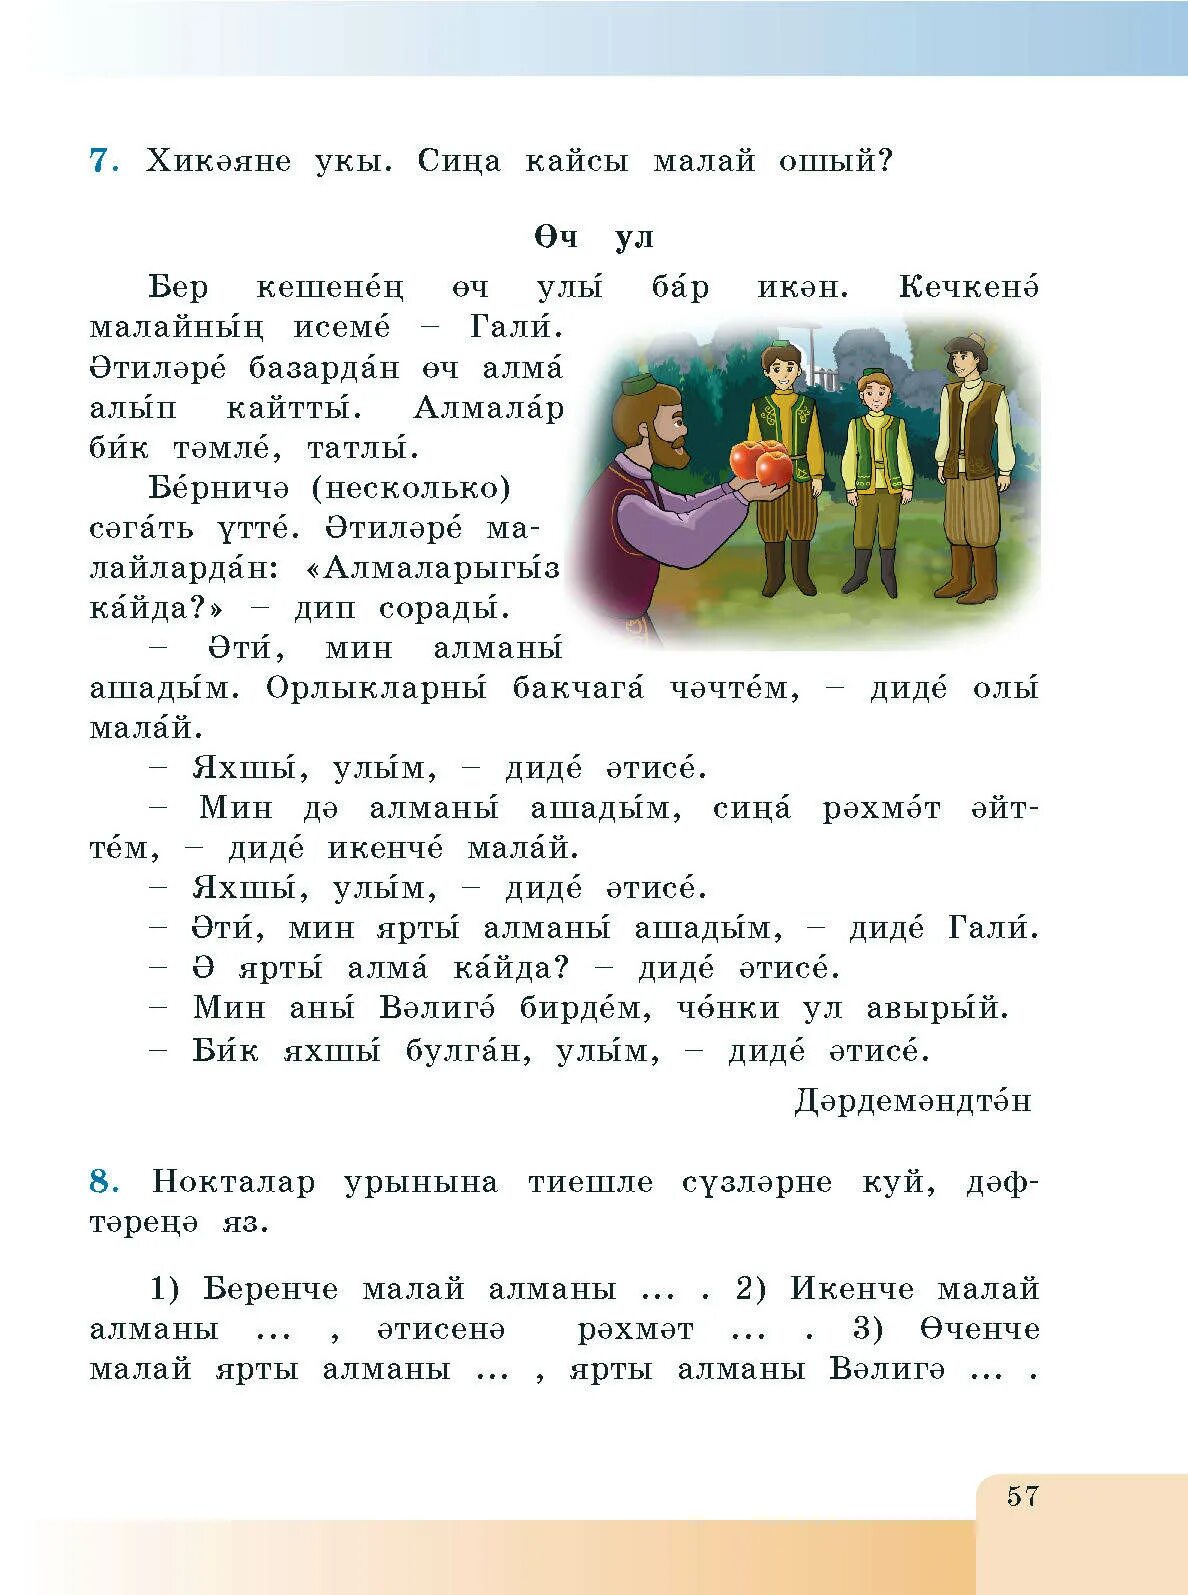 Учебник татарского языка хайдарова